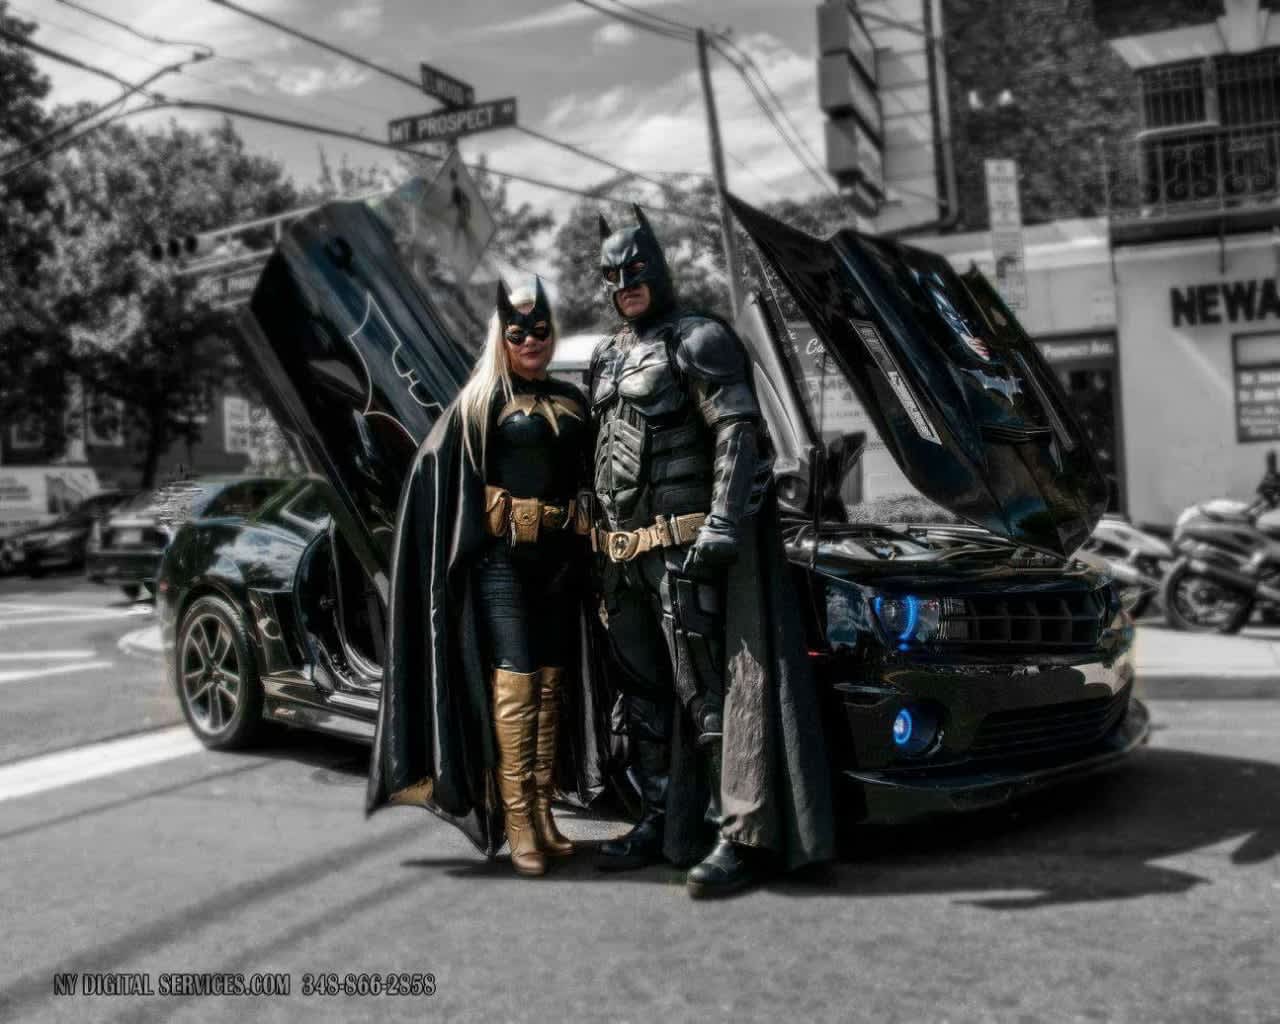 Meet Batman and Batgirl at a TLE Trunk-or-Treat event.